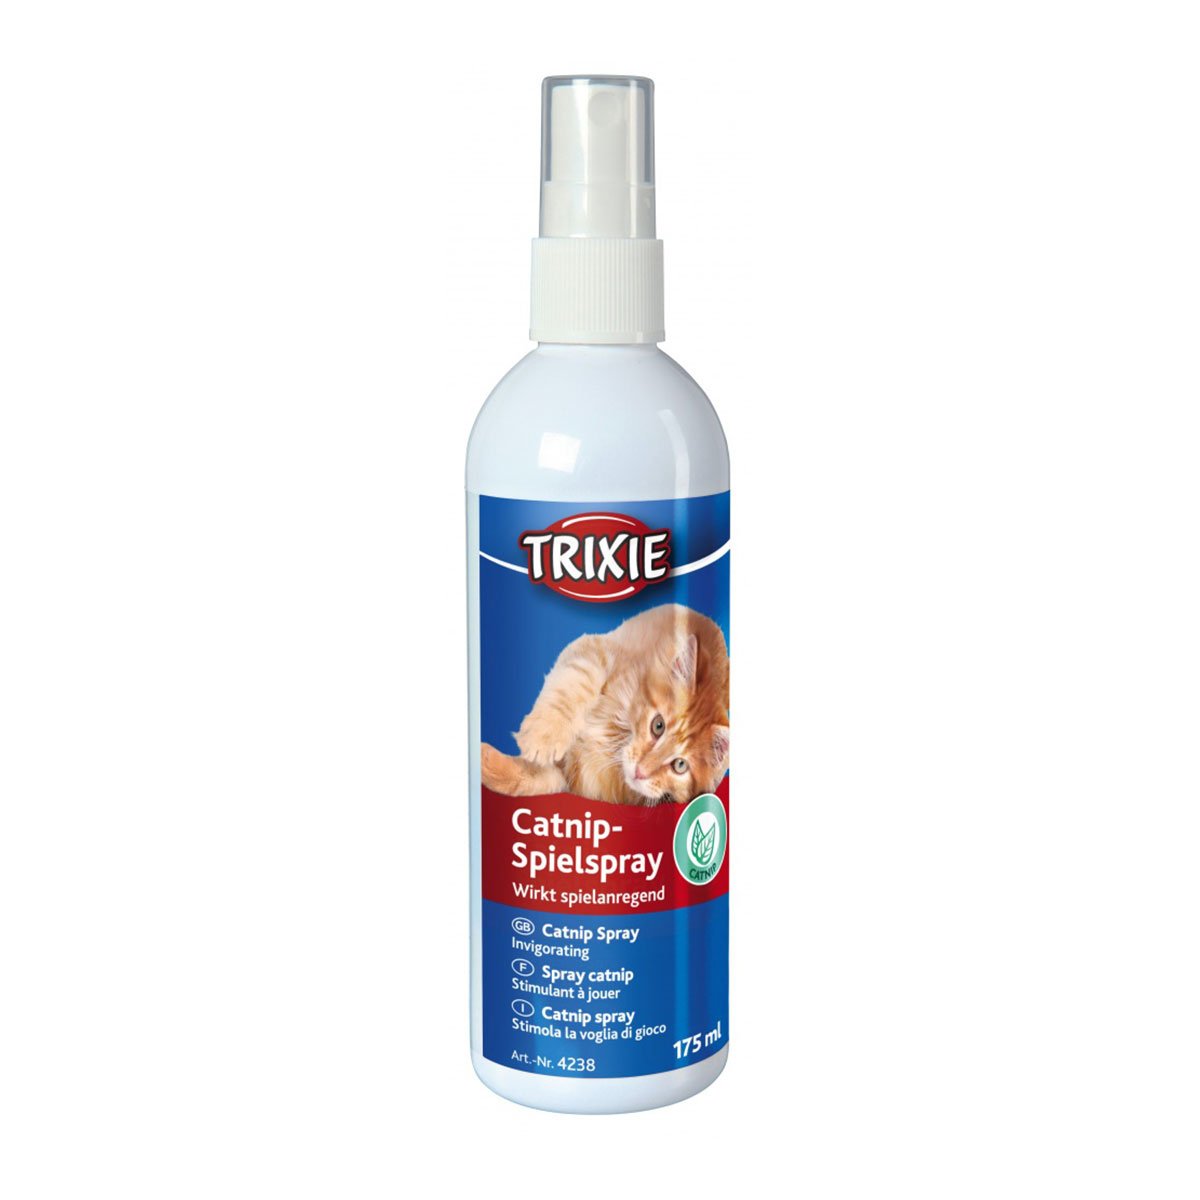 Trixie Catnip-Spielspray Katzenminze-Extrakt 175 ml von TRIXIE